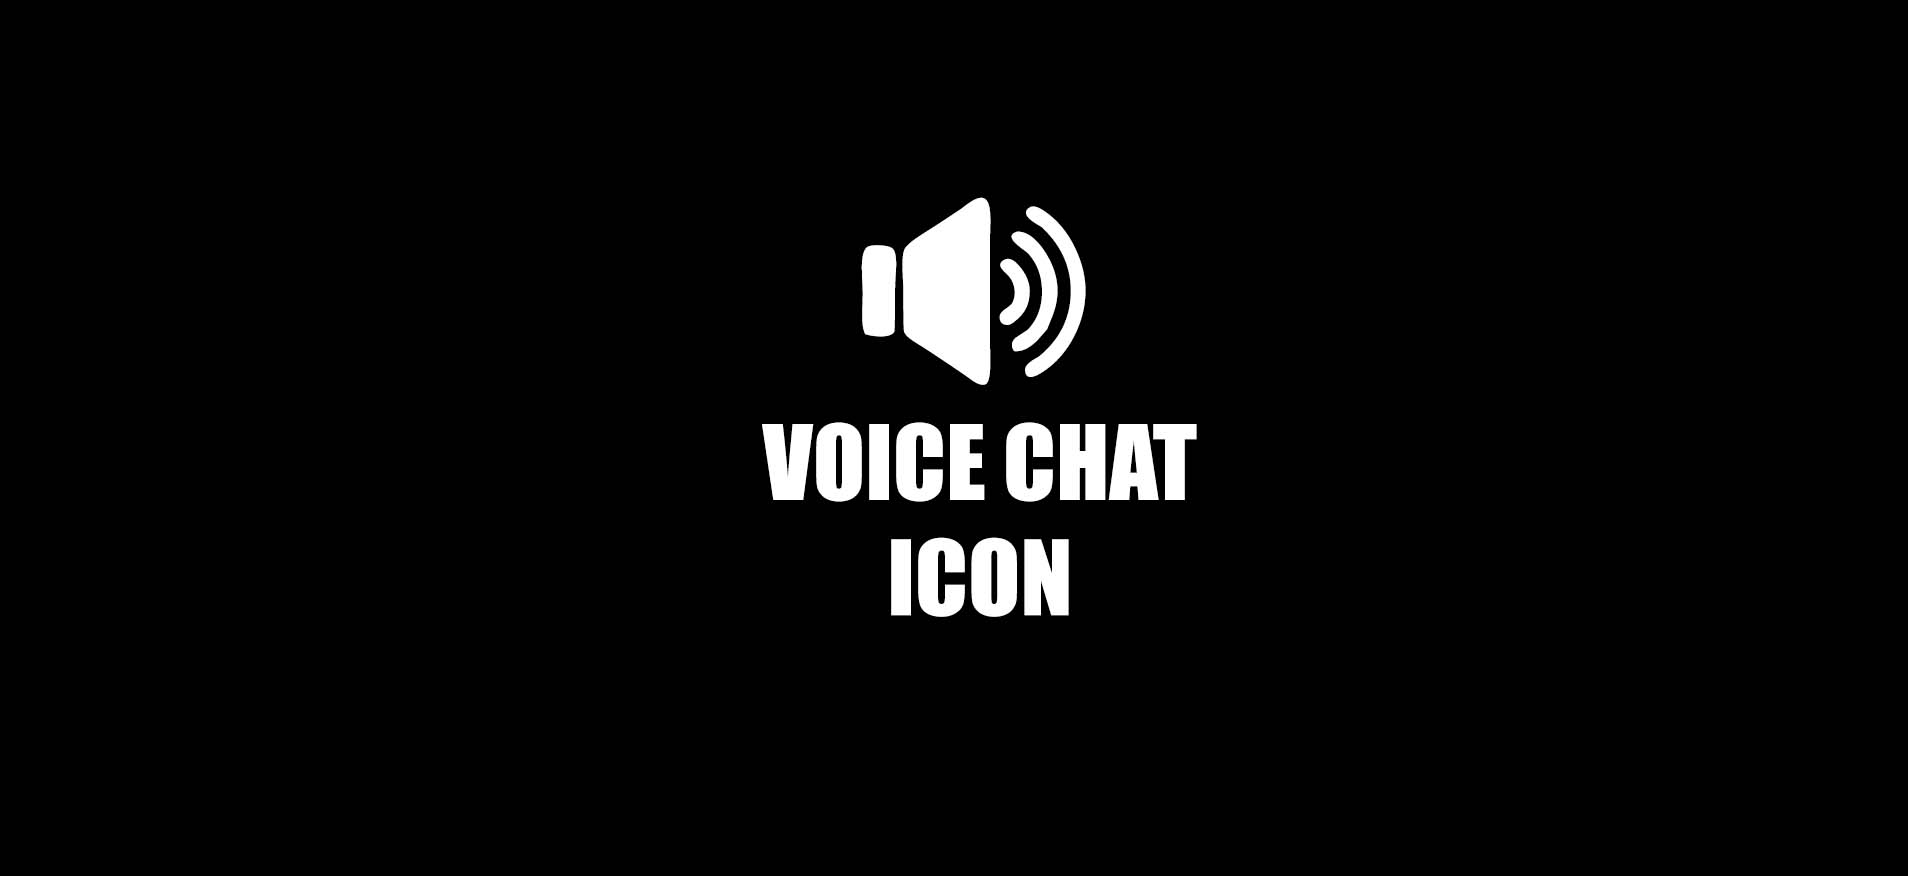 Voicechat. Голосовой чат. Голосовой чат дота. Иконка голосового чата. Значок Voice chat.